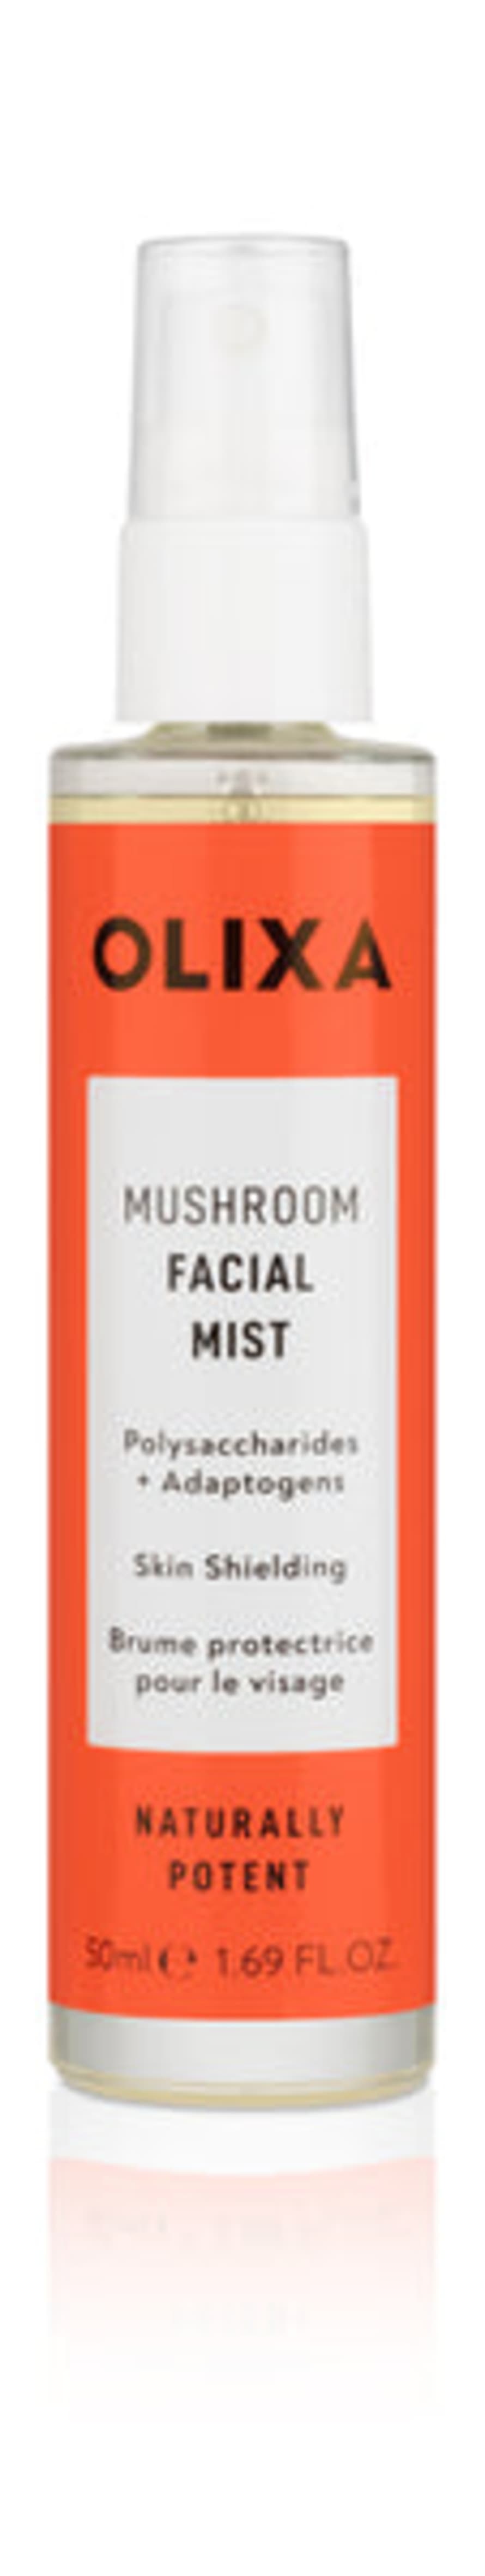 Olixa Mushroom Facial Mist